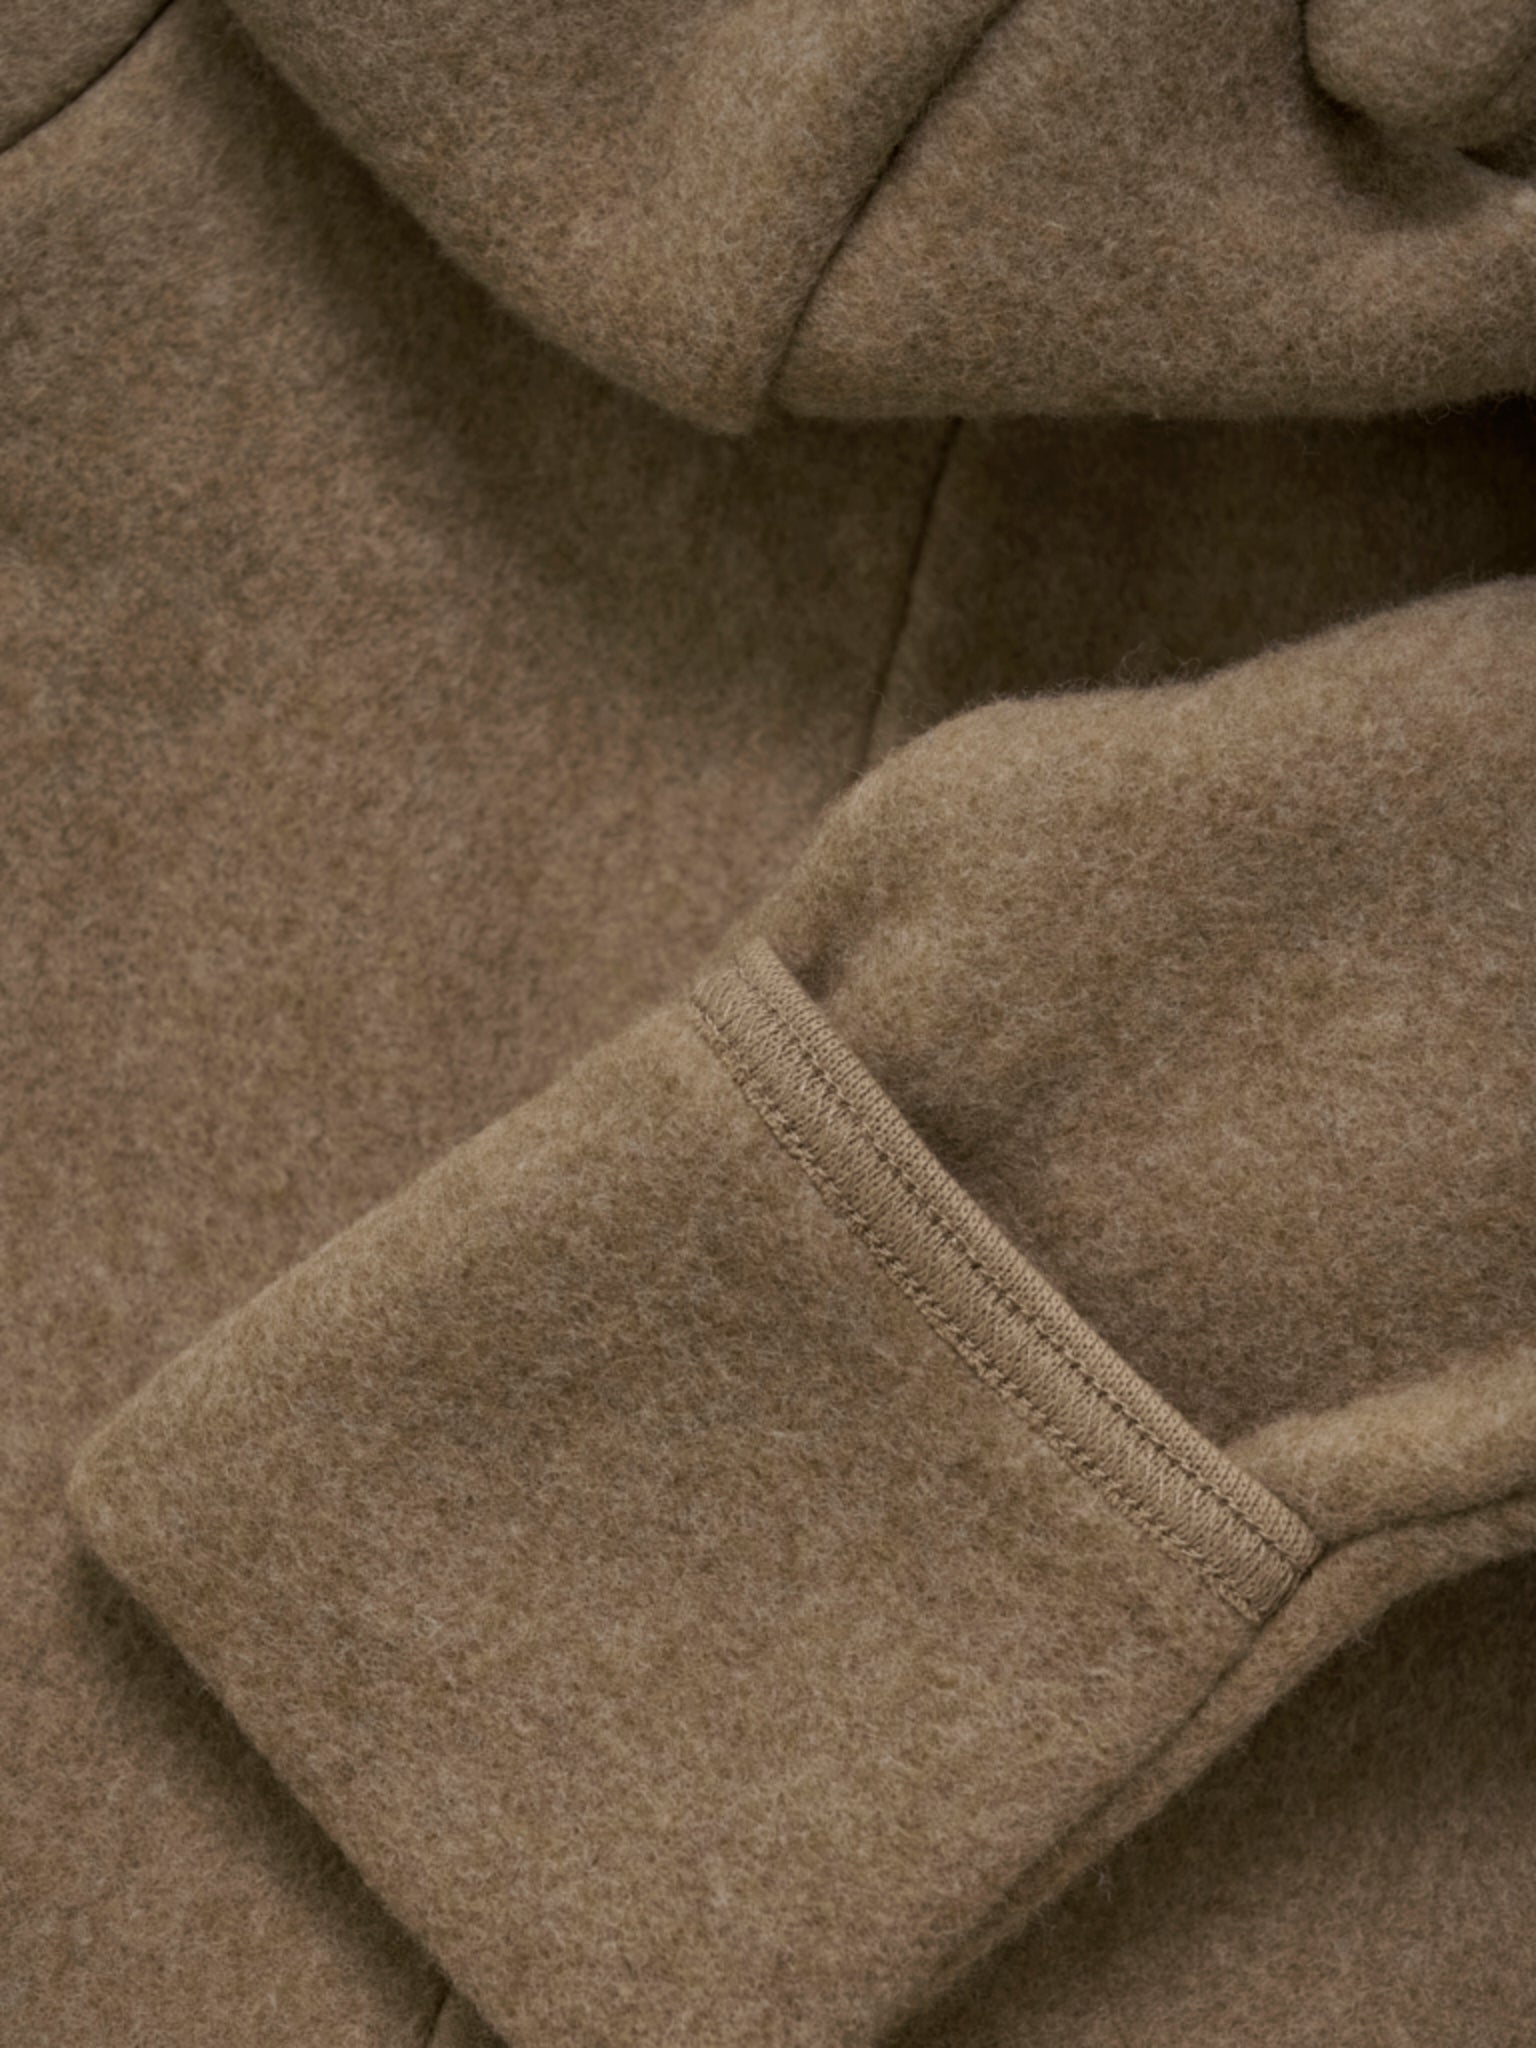 HUTTEliHUT - Pram Suit Ears Cot. Fleece (S) Color: 2564 - Molé Melange-480315-2564 - Lille Univers